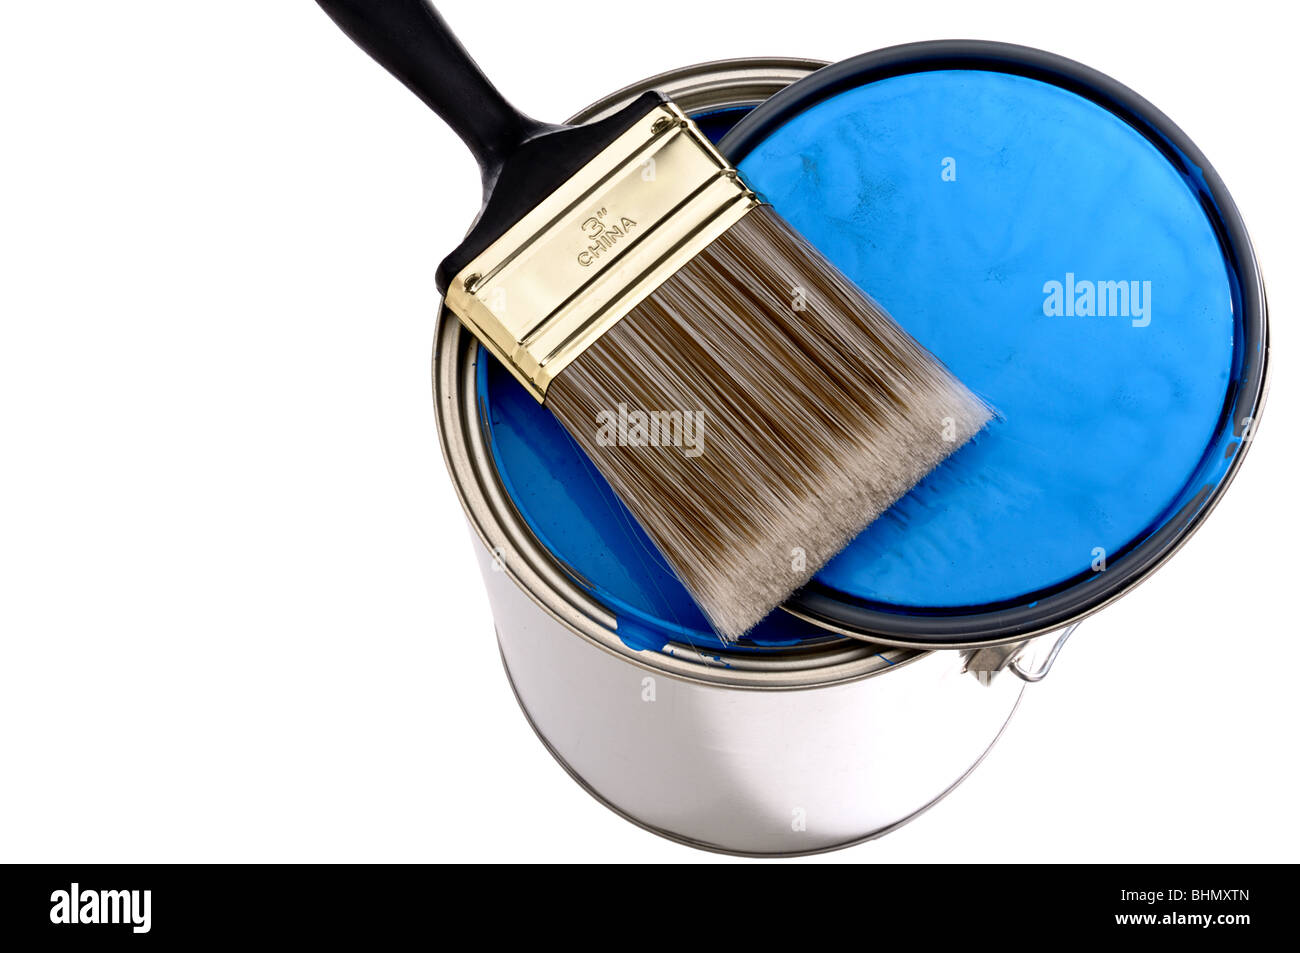 El cepillo de la pintura y la tapa sobre la parte superior de una lata de pintura azul Foto de stock